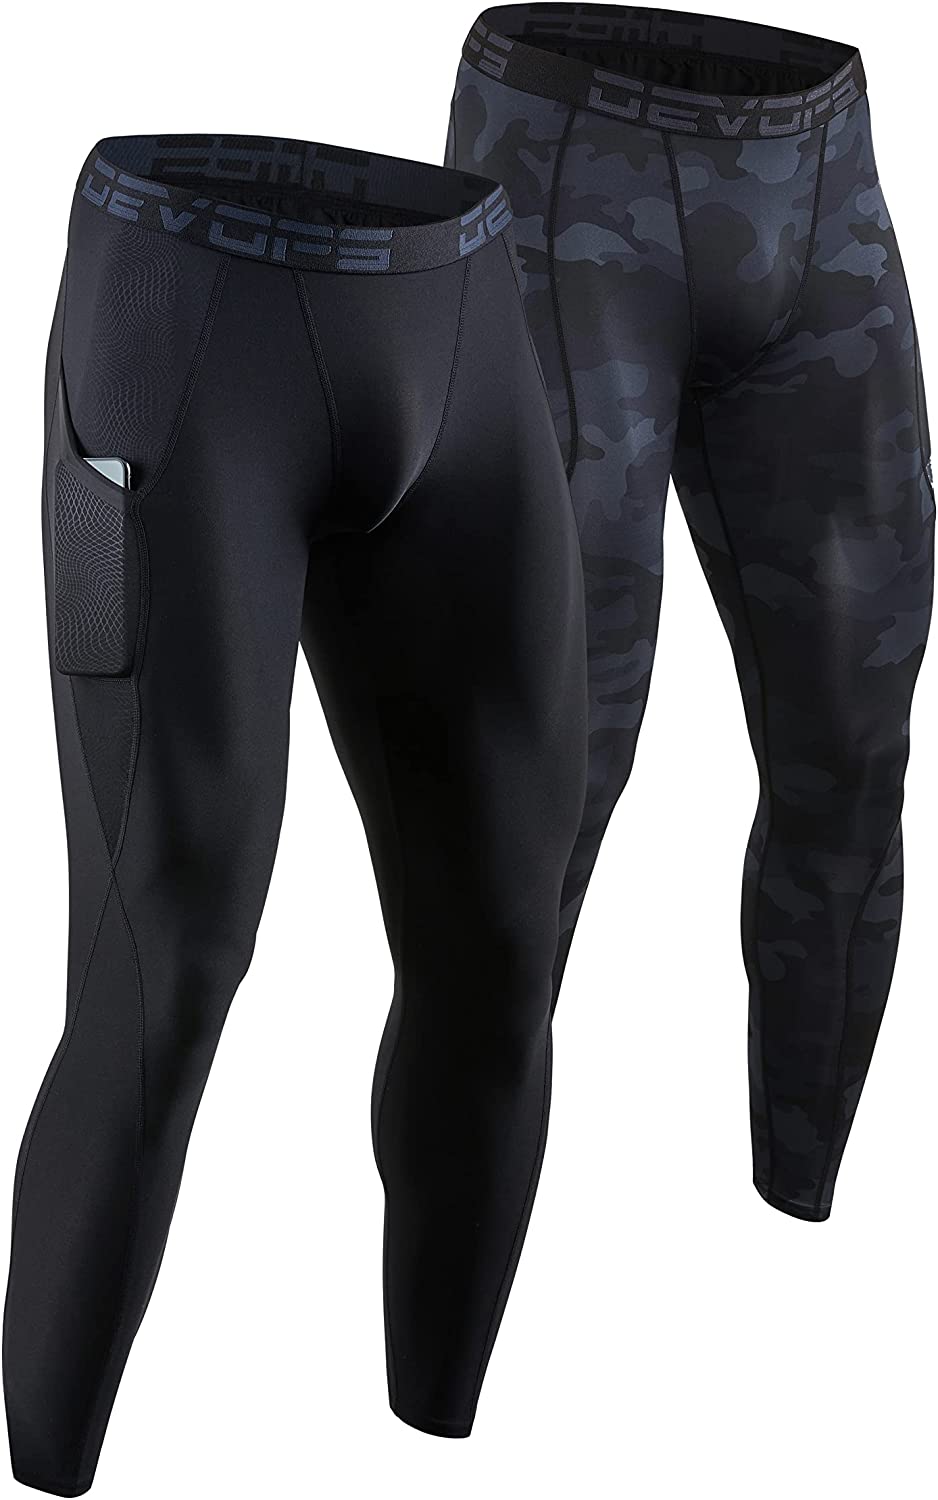 DEVOPS Men's Thermal Compression Pants Athletic Leggings Base Layer Bottoms 2 Pack